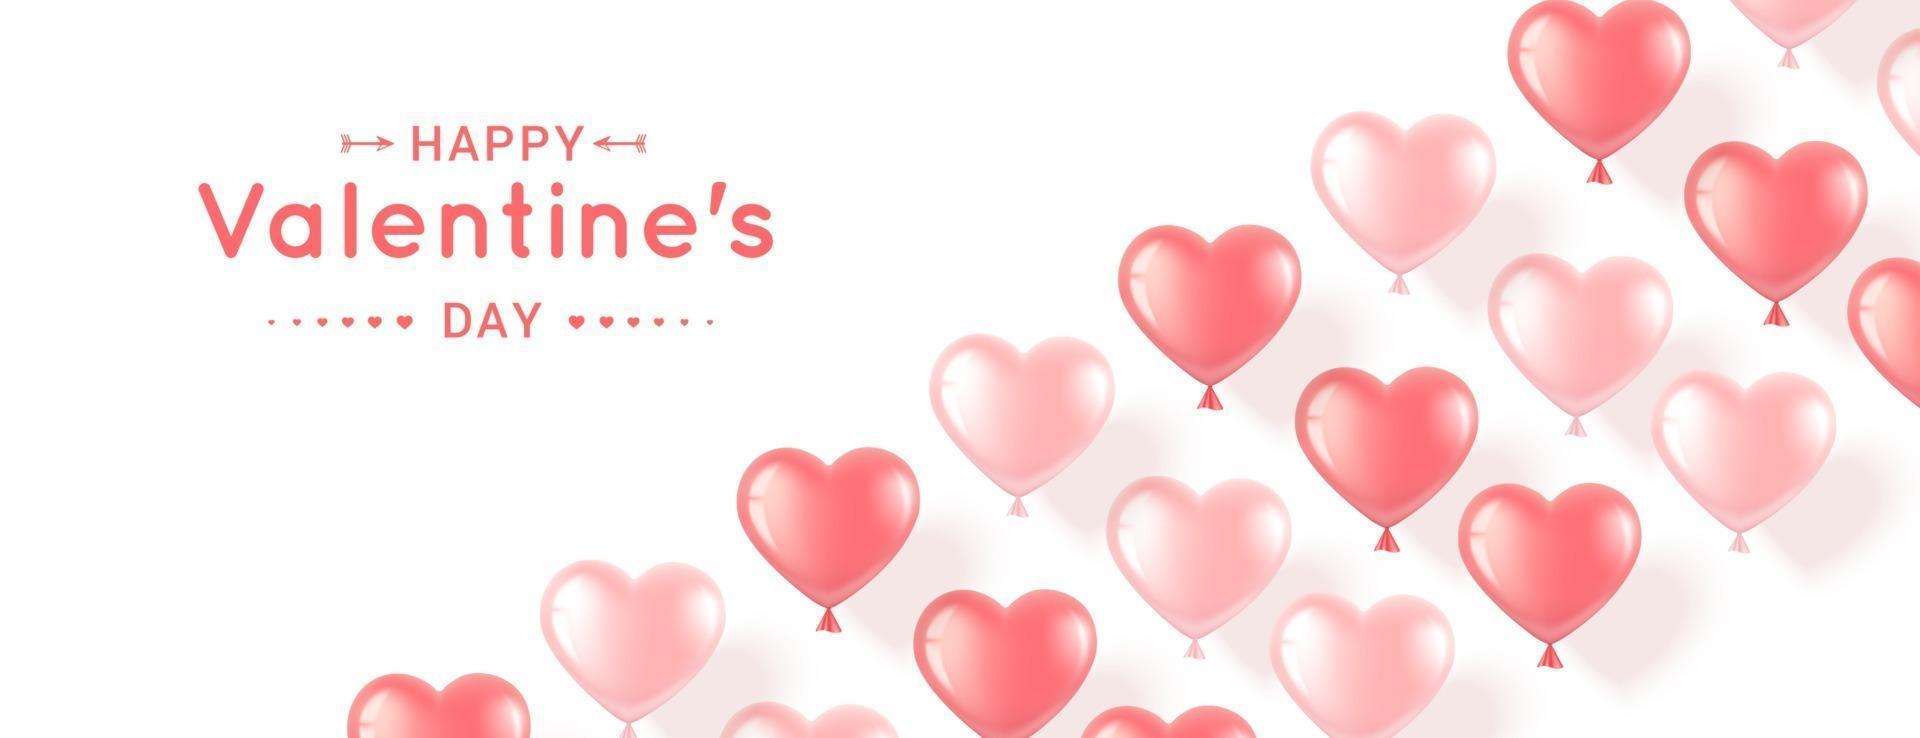 banner con corazones rosas para el dia de san valentin vector